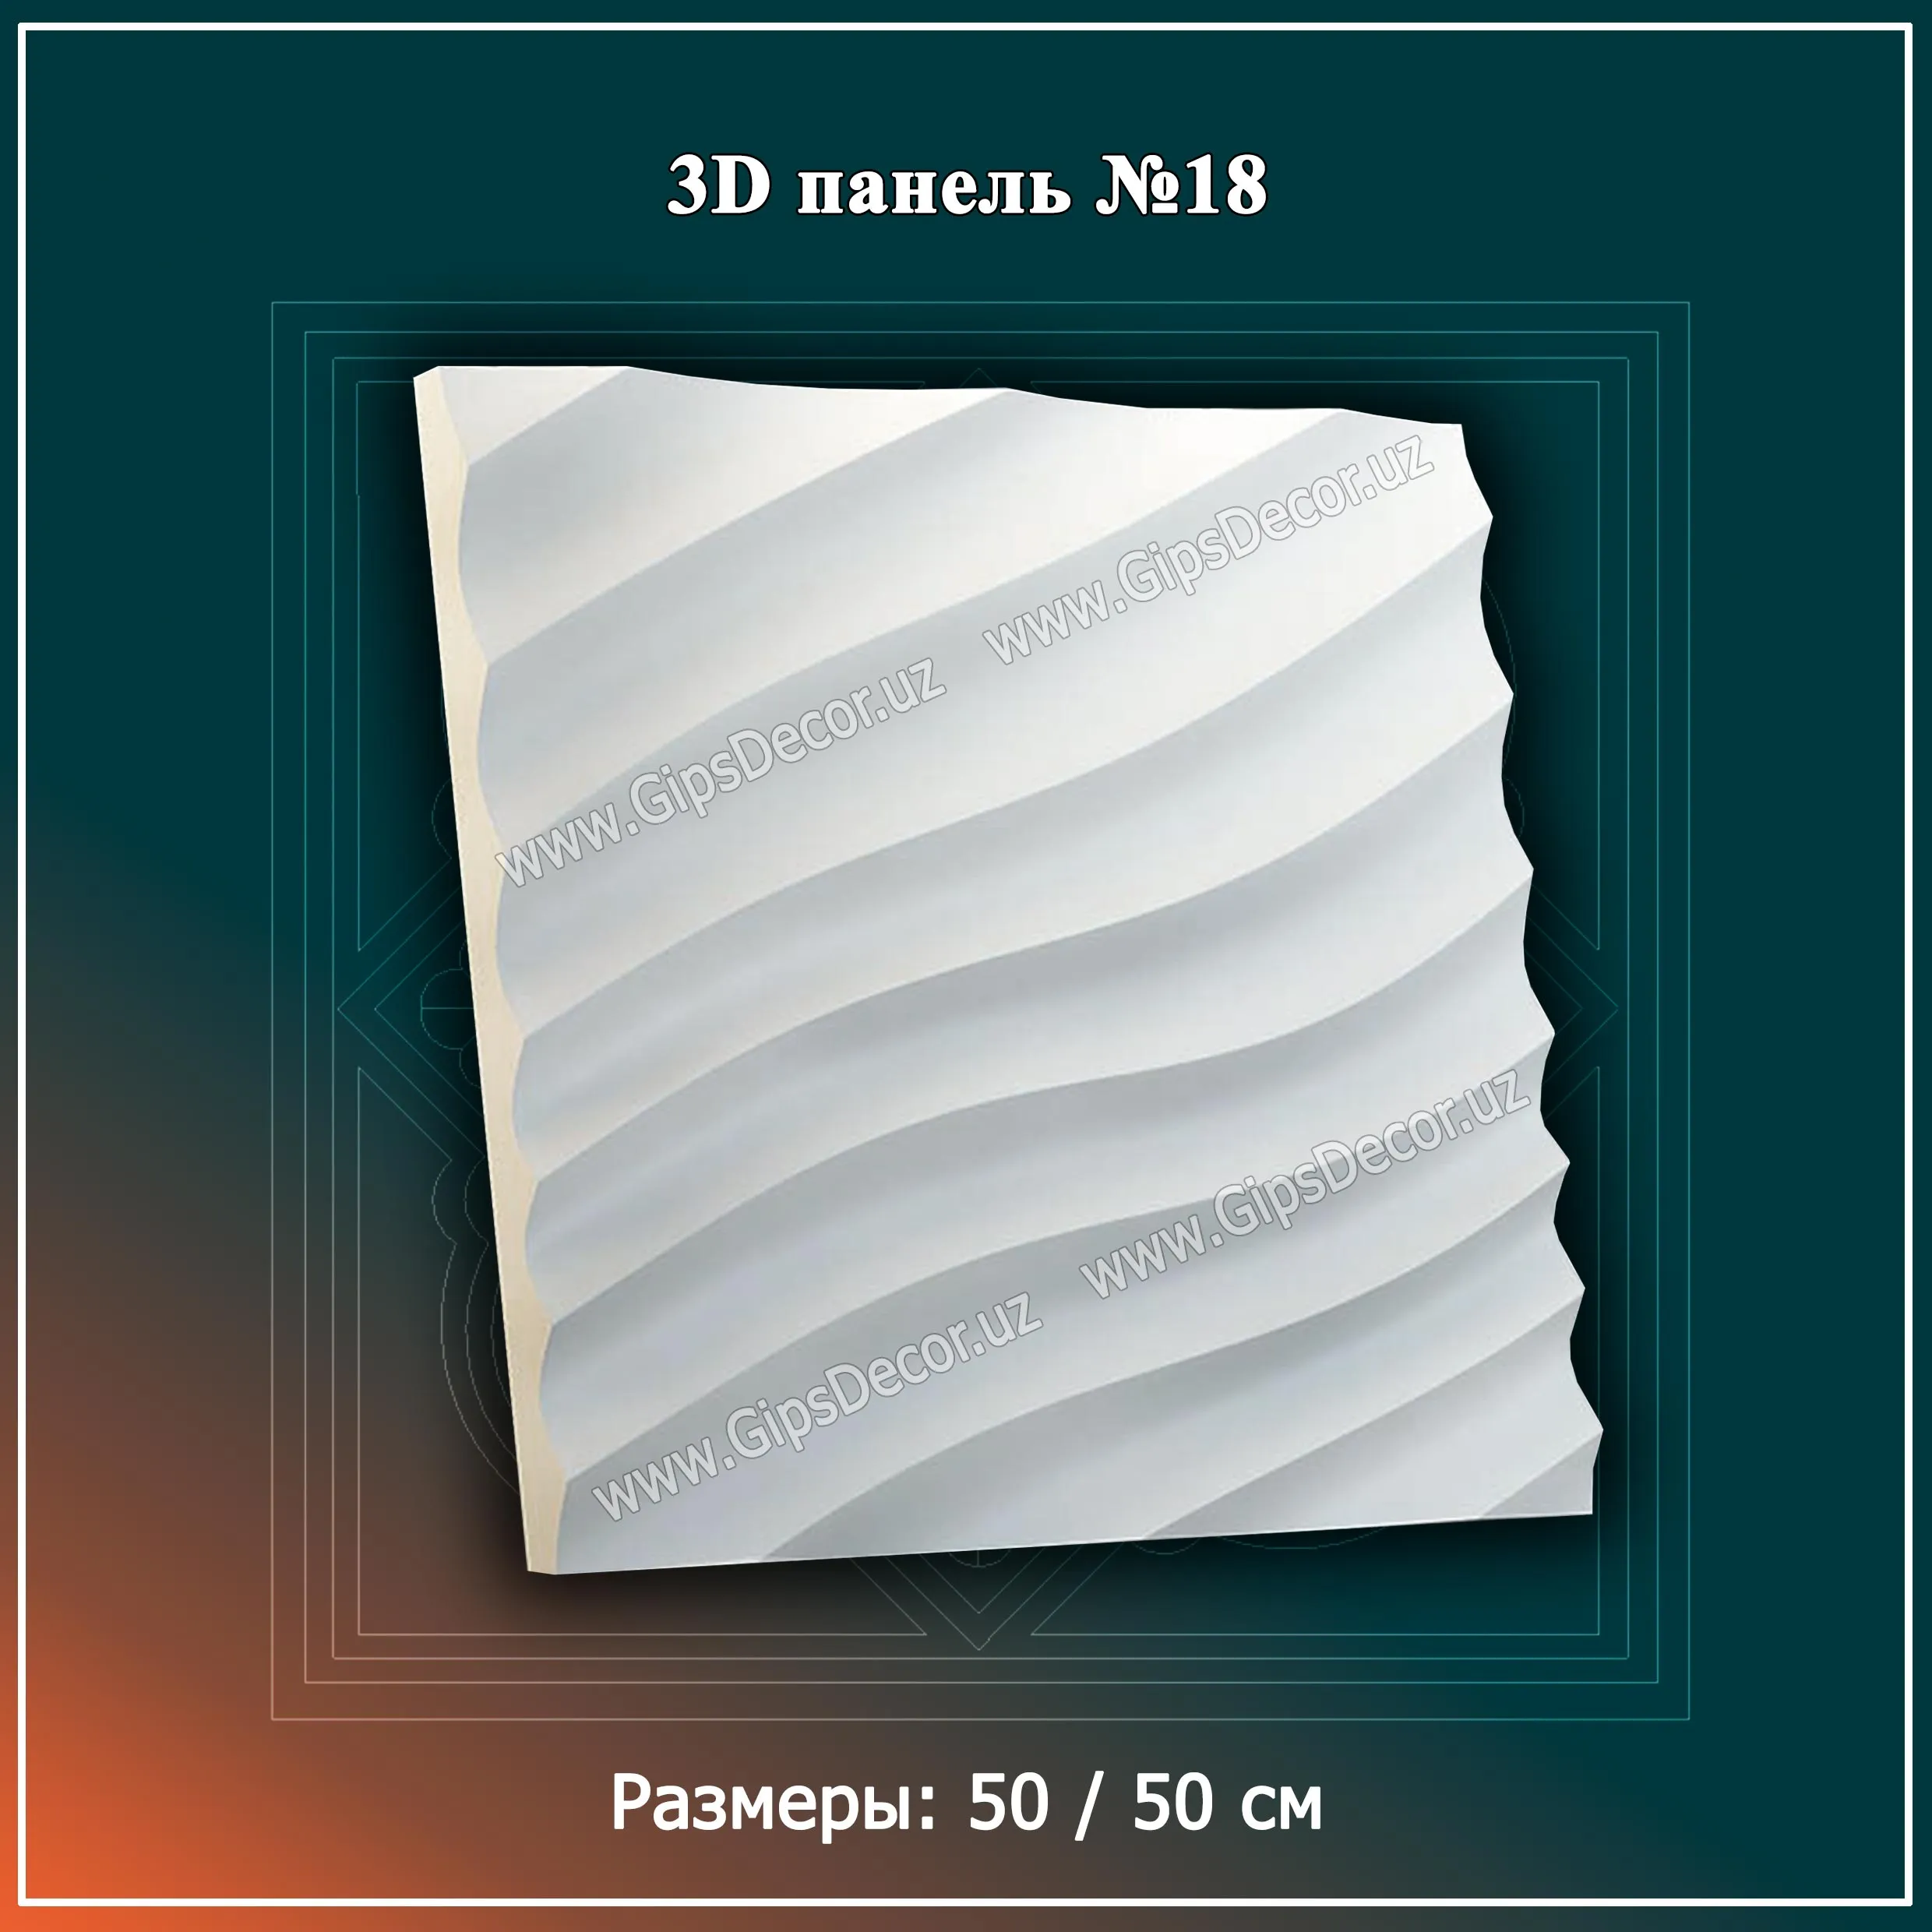 3D Панель №18 Размеры: 50 / 50 см#1